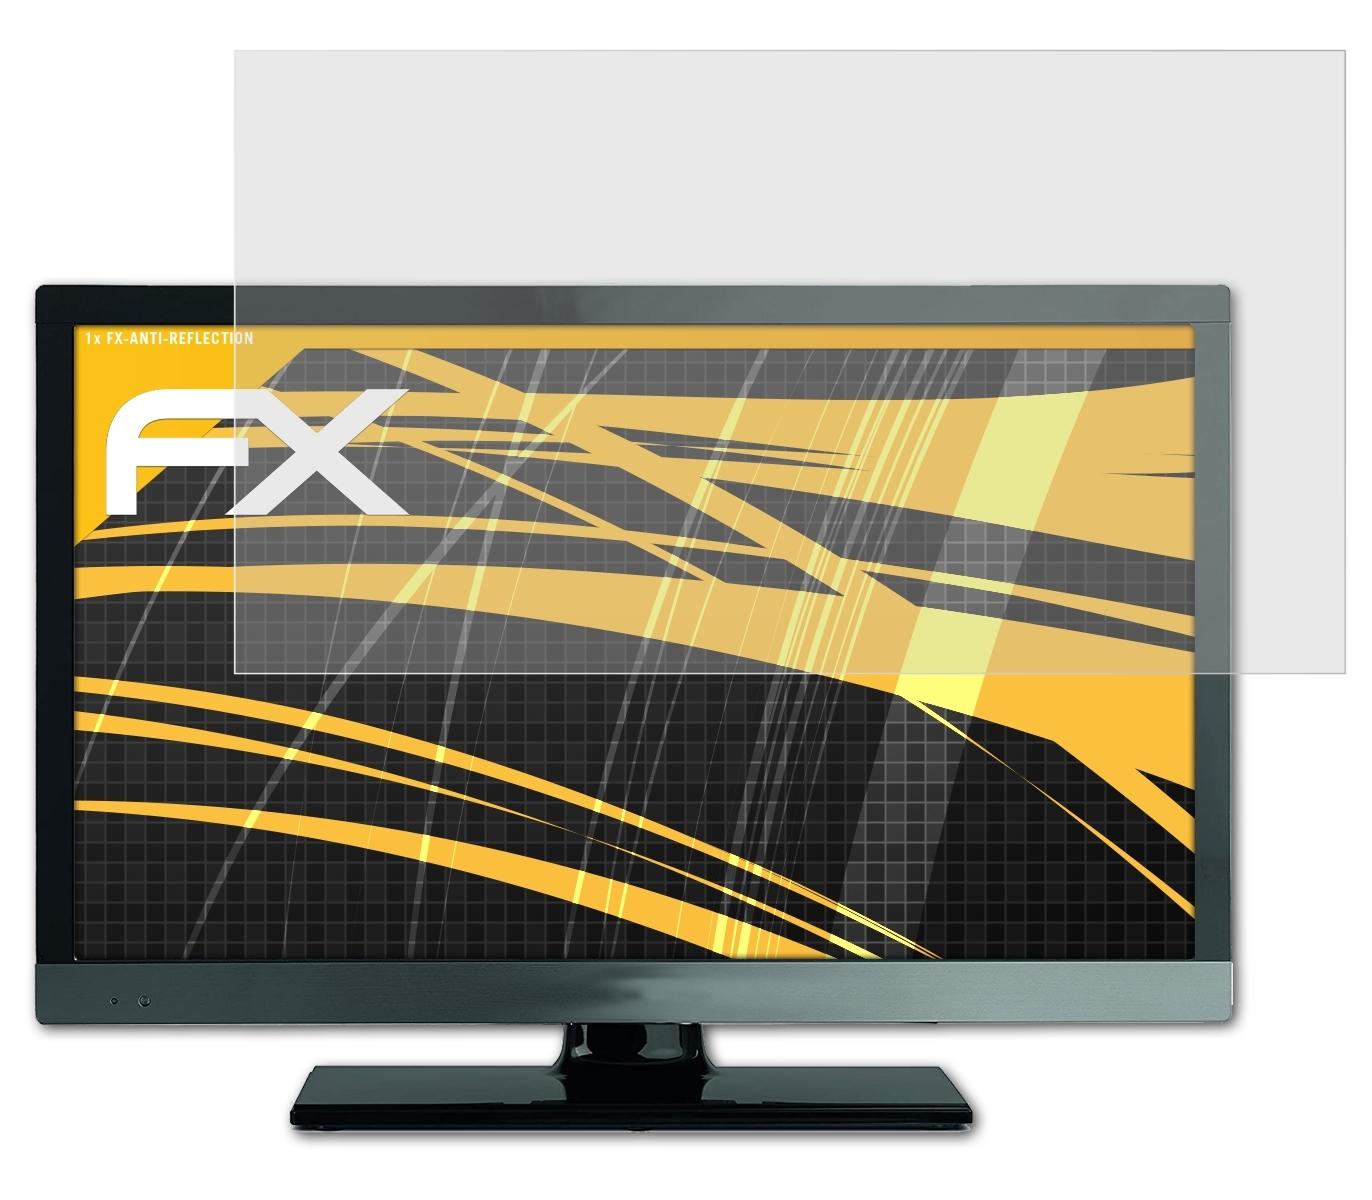 ATFOLIX FX-Antireflex Displayschutz(für Pro Techniline Technisat 22)